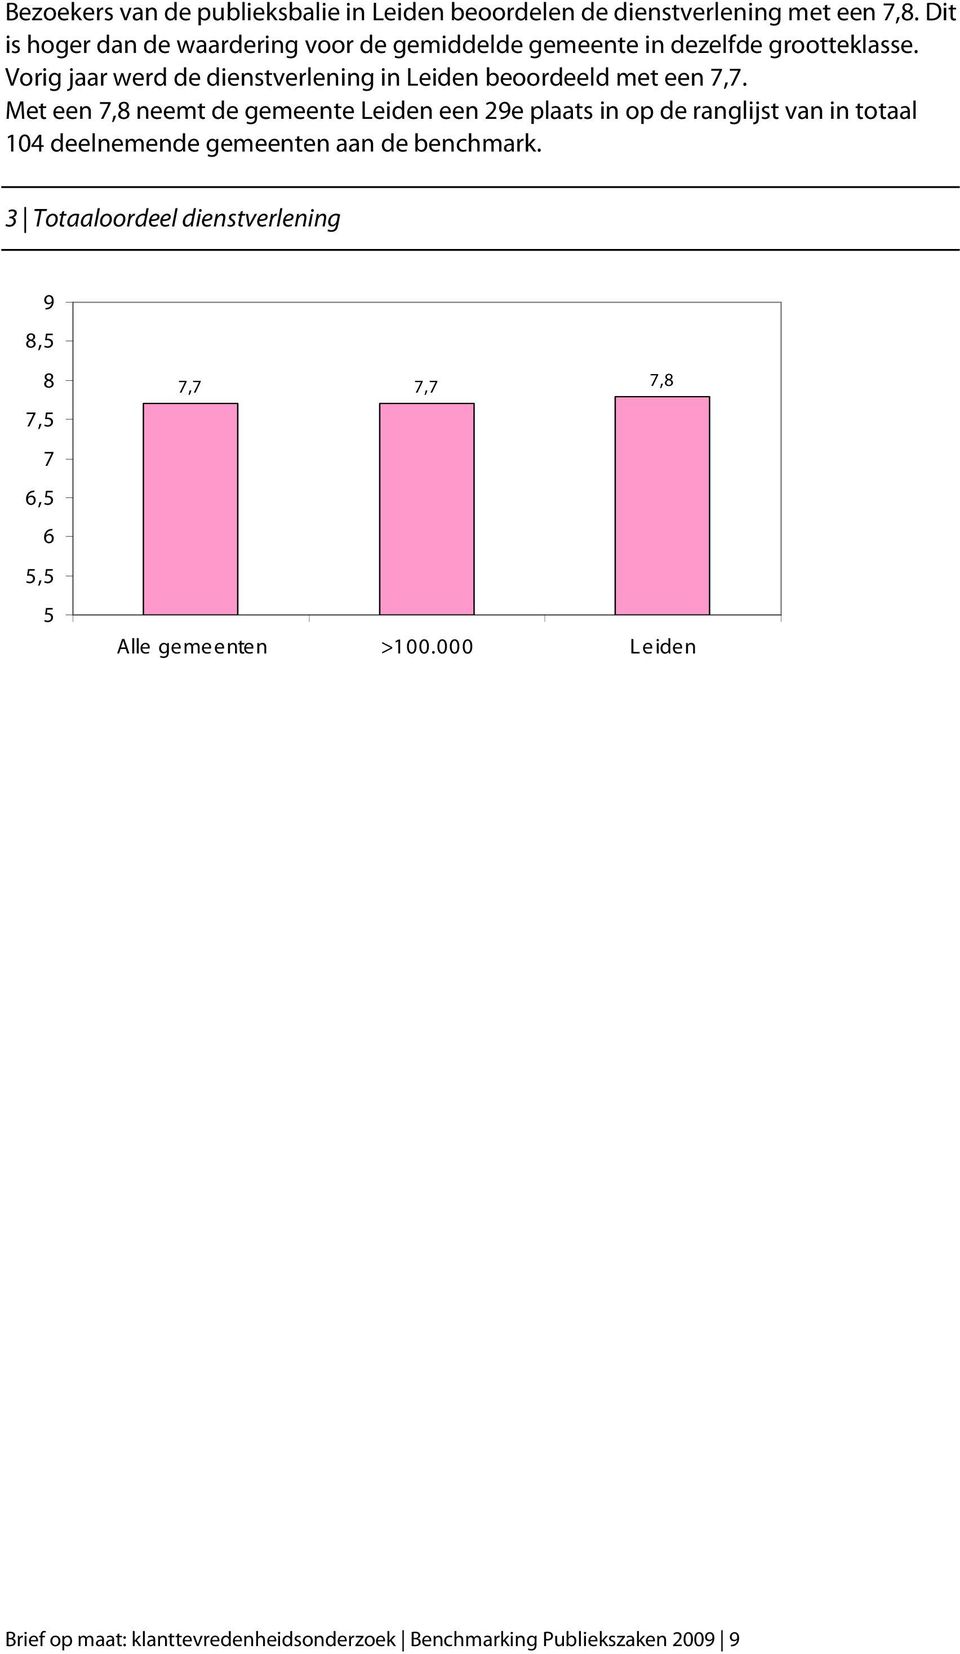 Vorig jaar werd de dienstverlening in Leiden beoordeeld met een 7,7.